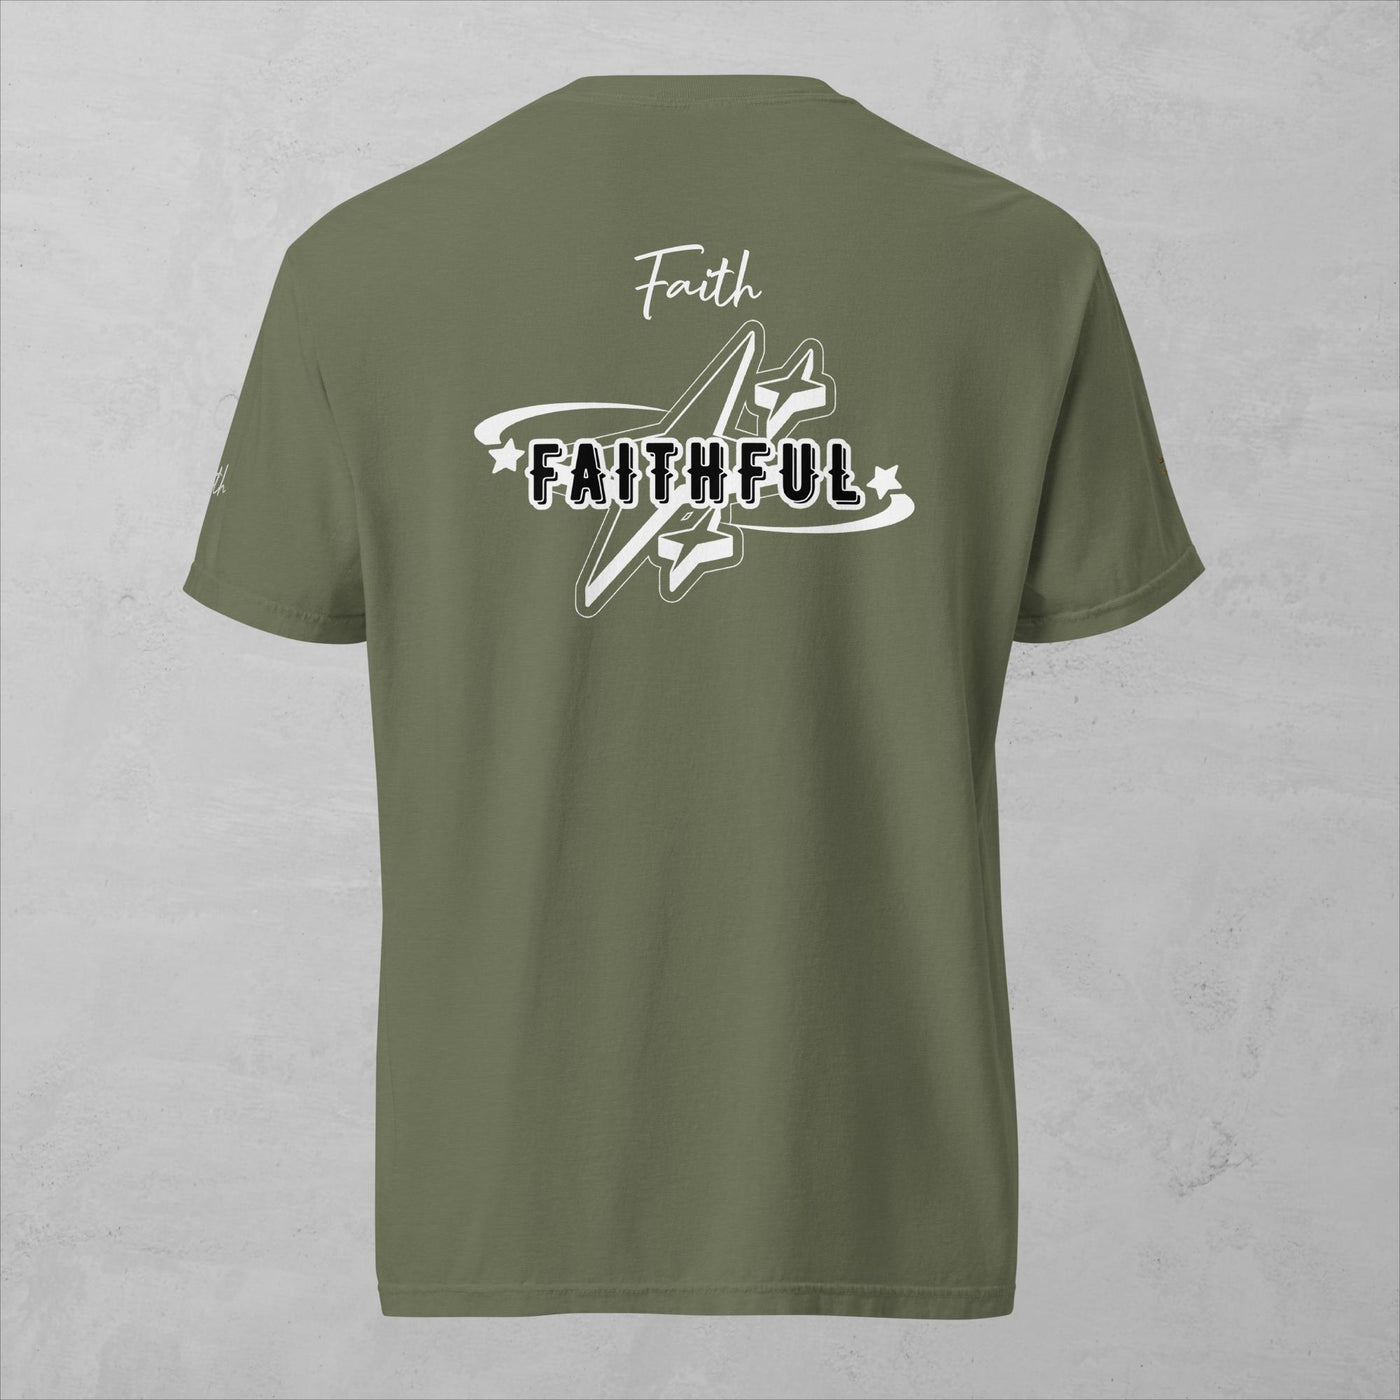 J.A Faith -Faithful- Men's heavyweight t-shirt